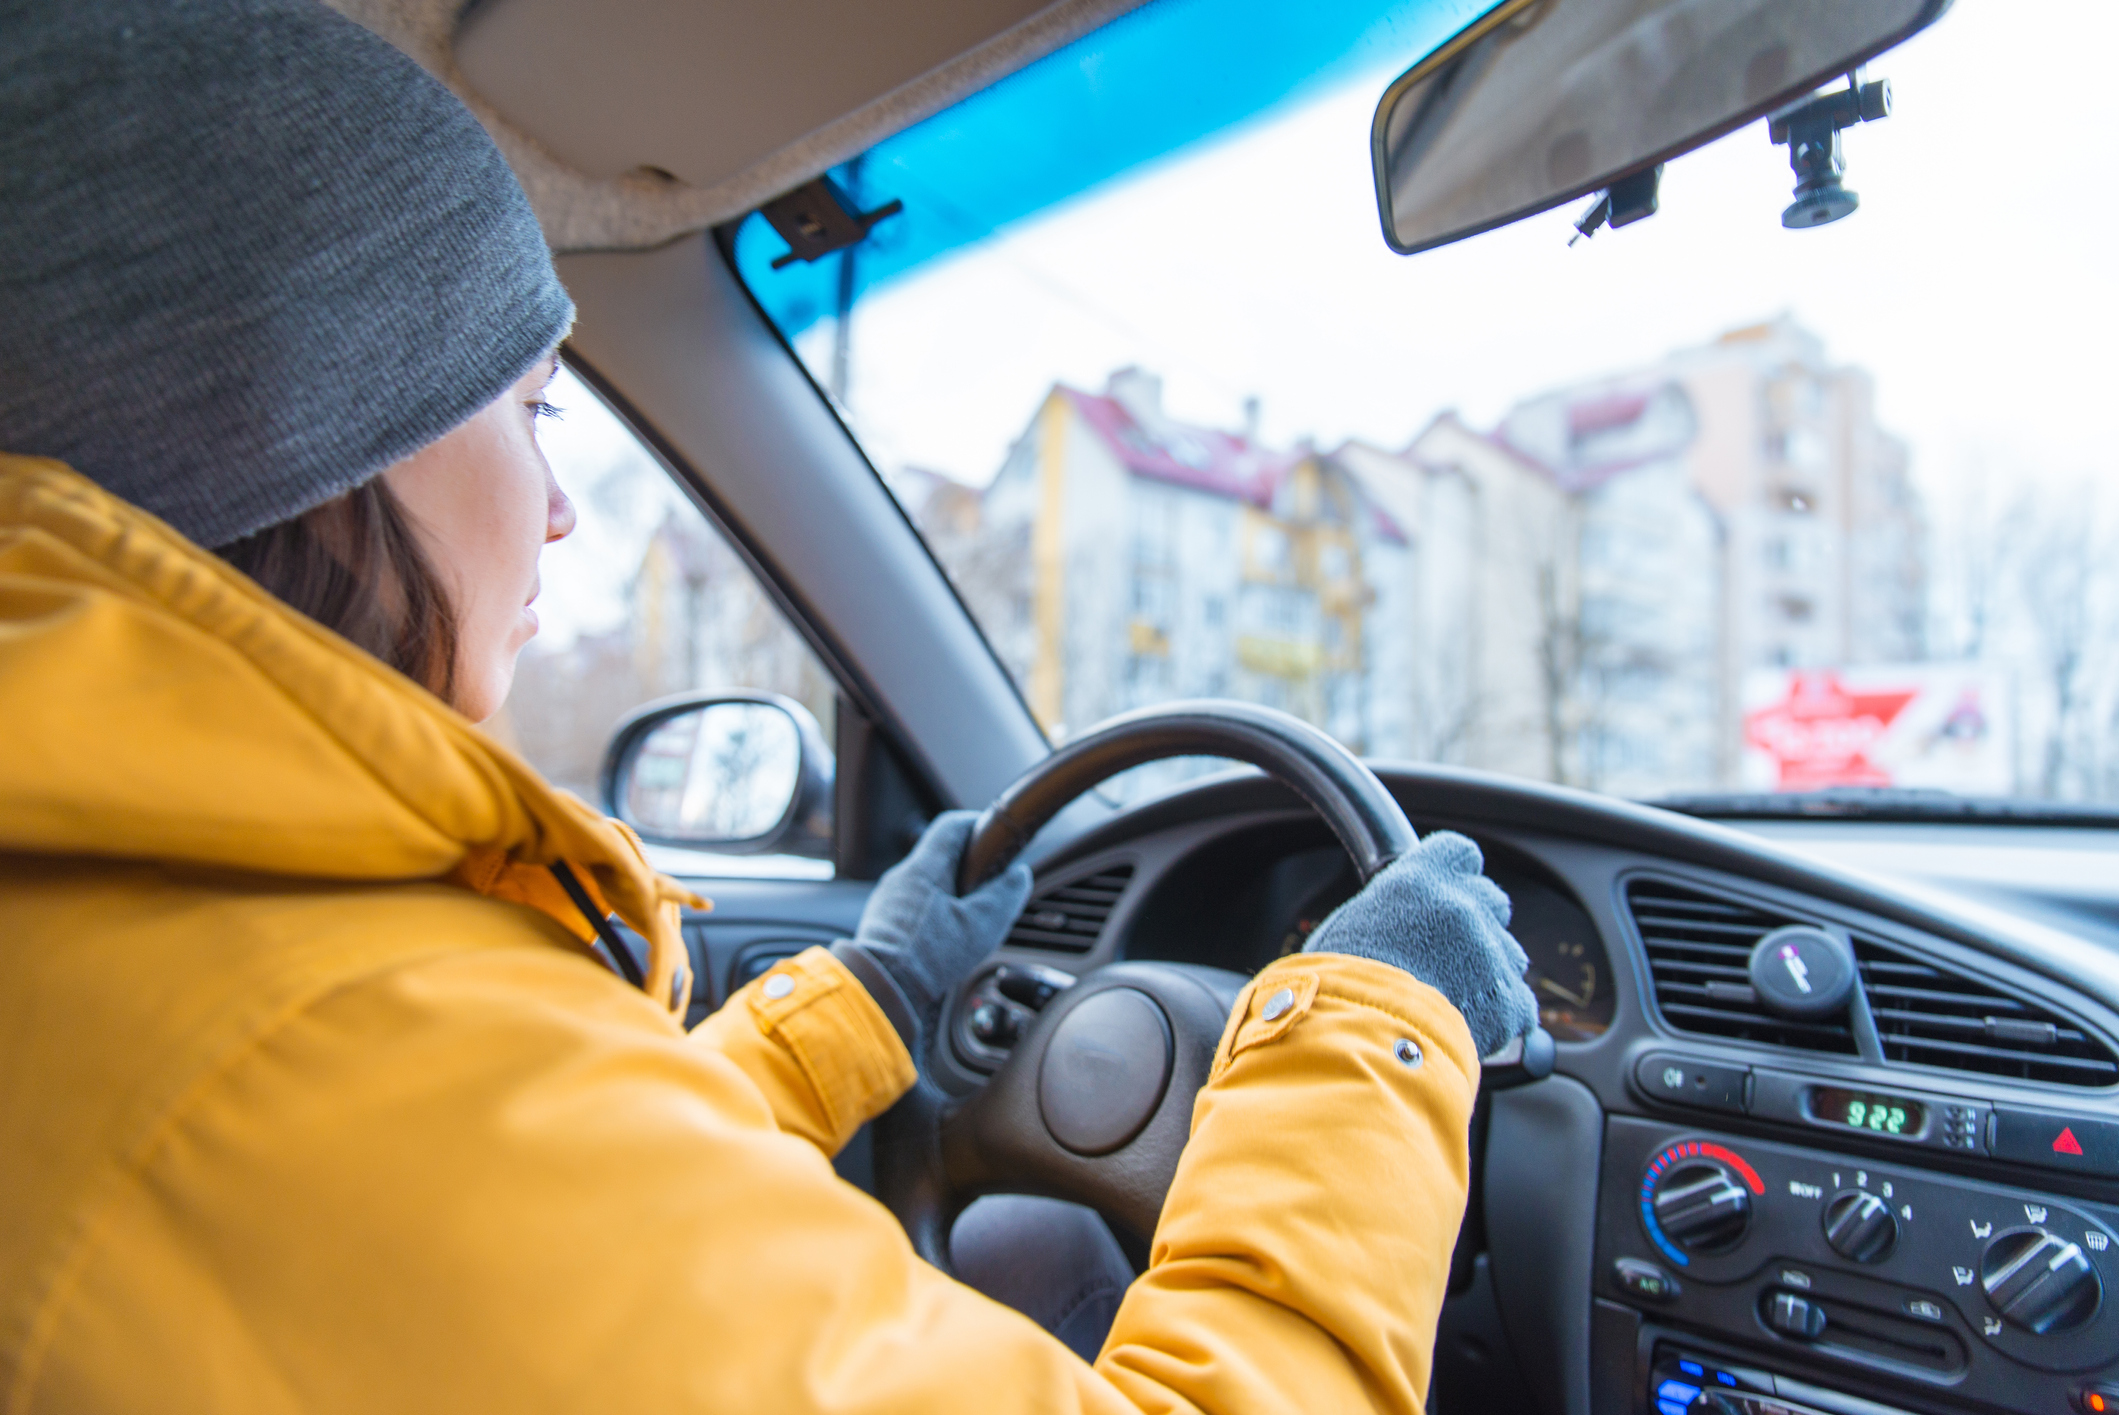 Dunlop Pneus compartilha dicas de segurança para enfrentar baixas temperaturas nas estradas